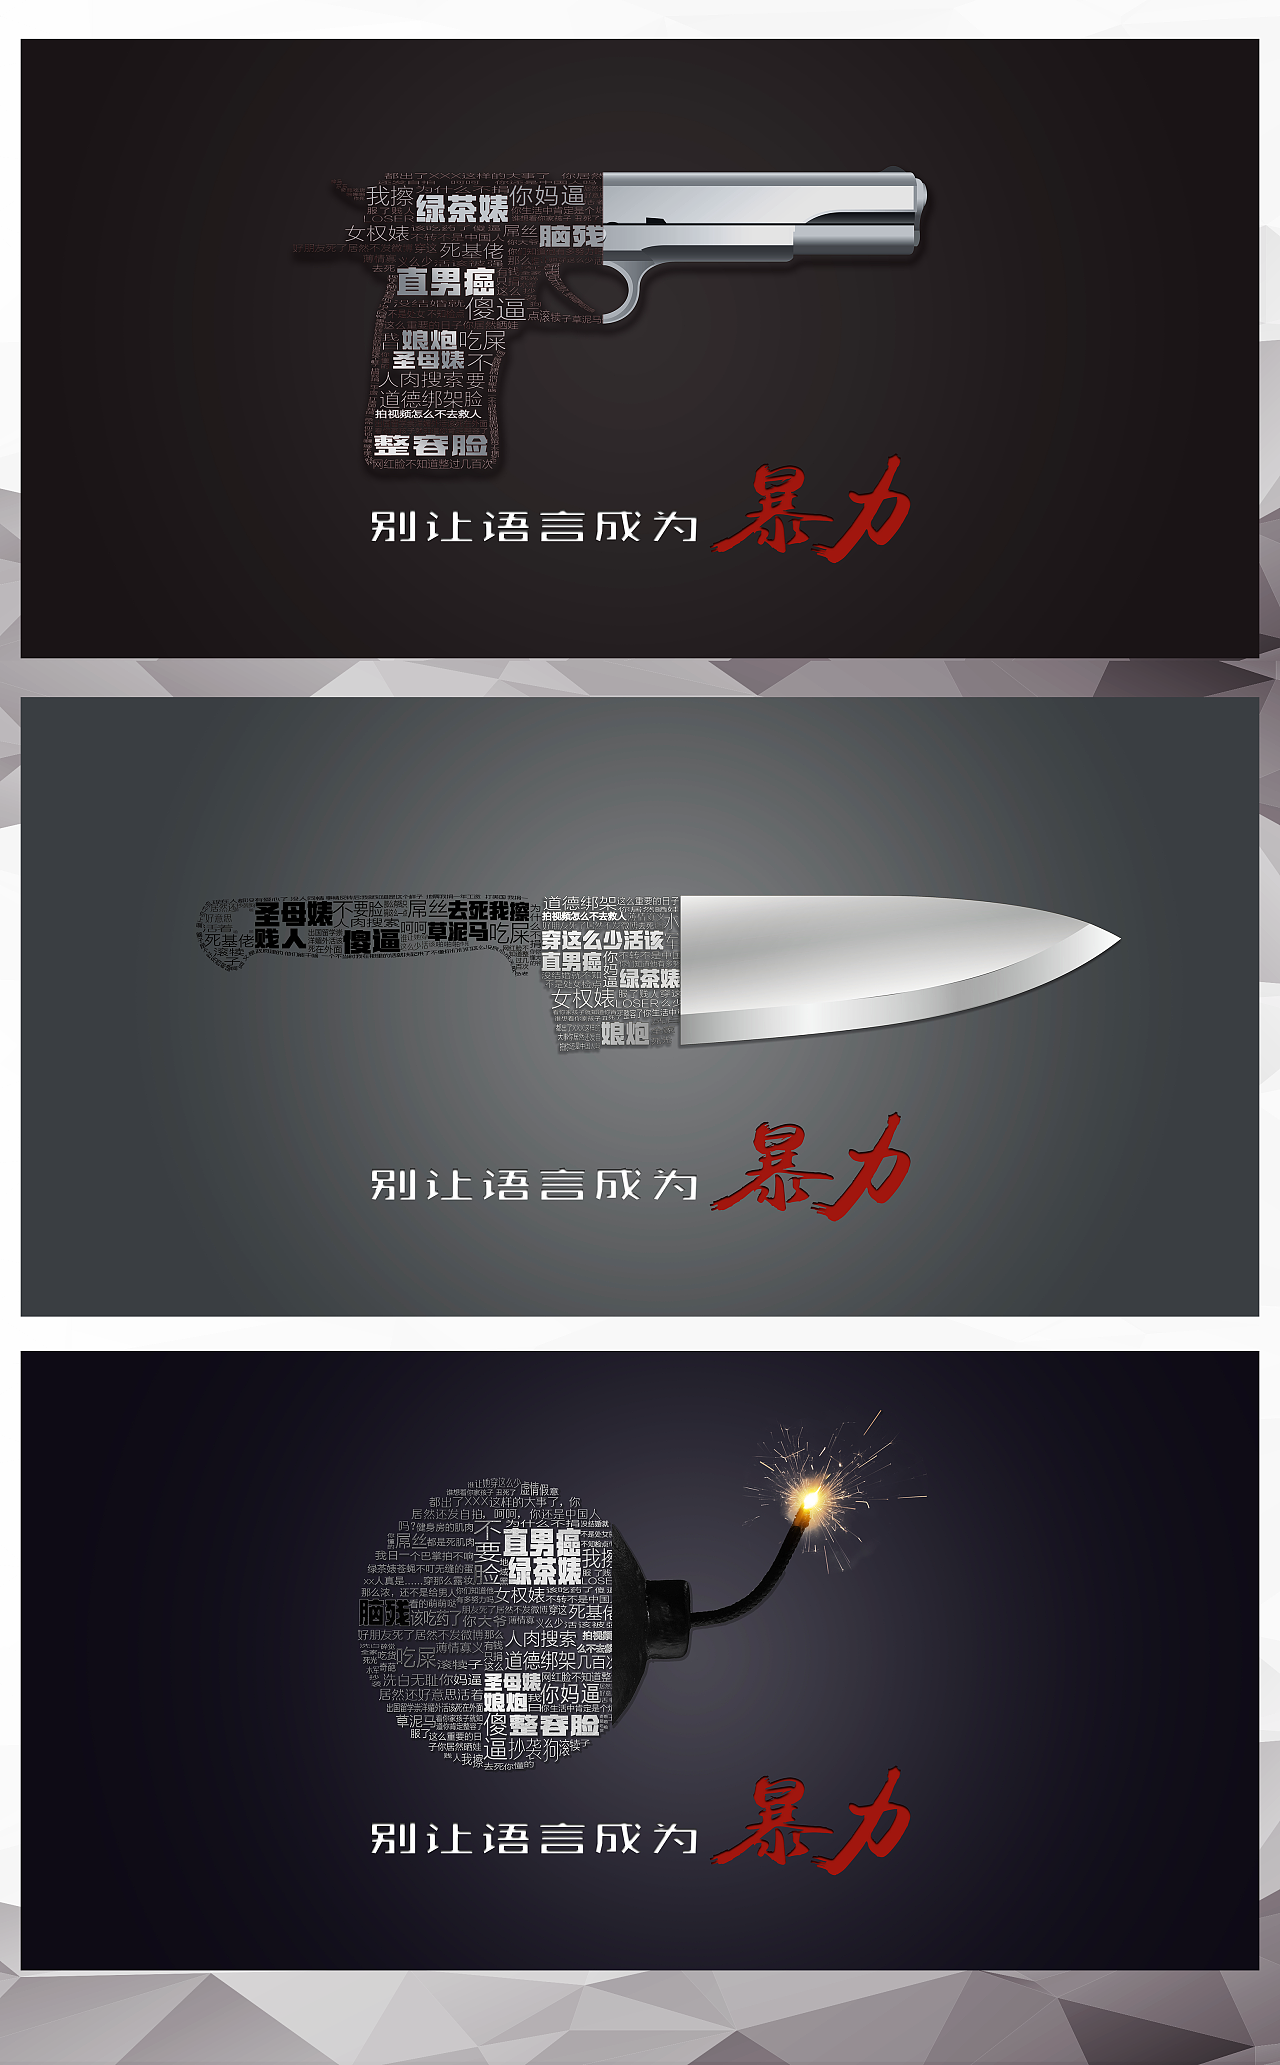 别让语言成为暴力——上海申通德高公益广告